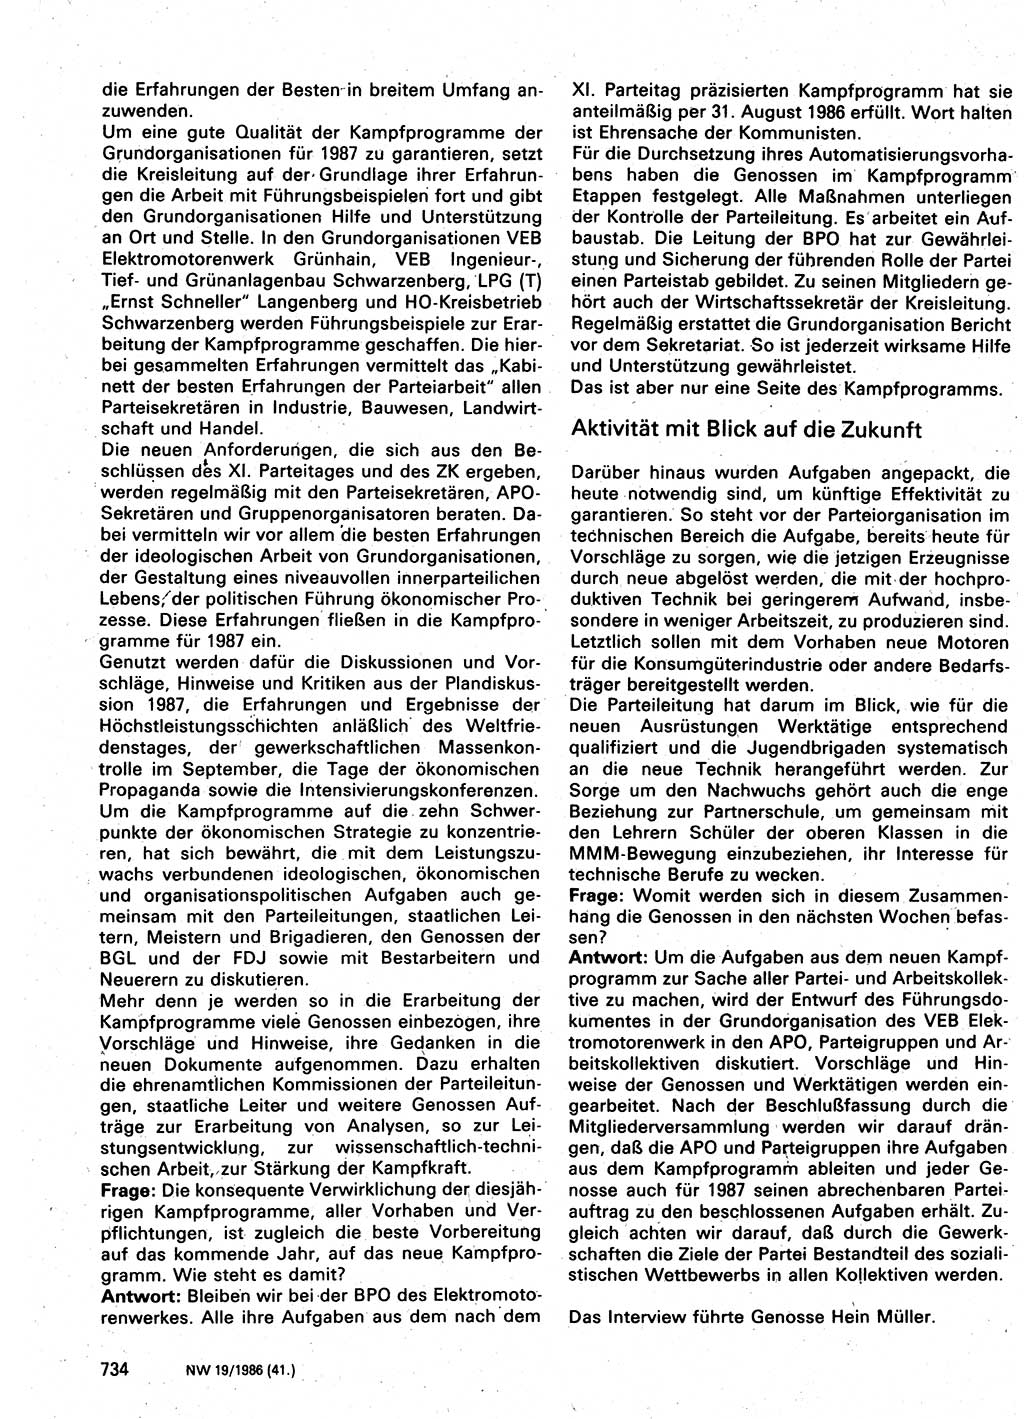 Neuer Weg (NW), Organ des Zentralkomitees (ZK) der SED (Sozialistische Einheitspartei Deutschlands) für Fragen des Parteilebens, 41. Jahrgang [Deutsche Demokratische Republik (DDR)] 1986, Seite 734 (NW ZK SED DDR 1986, S. 734)